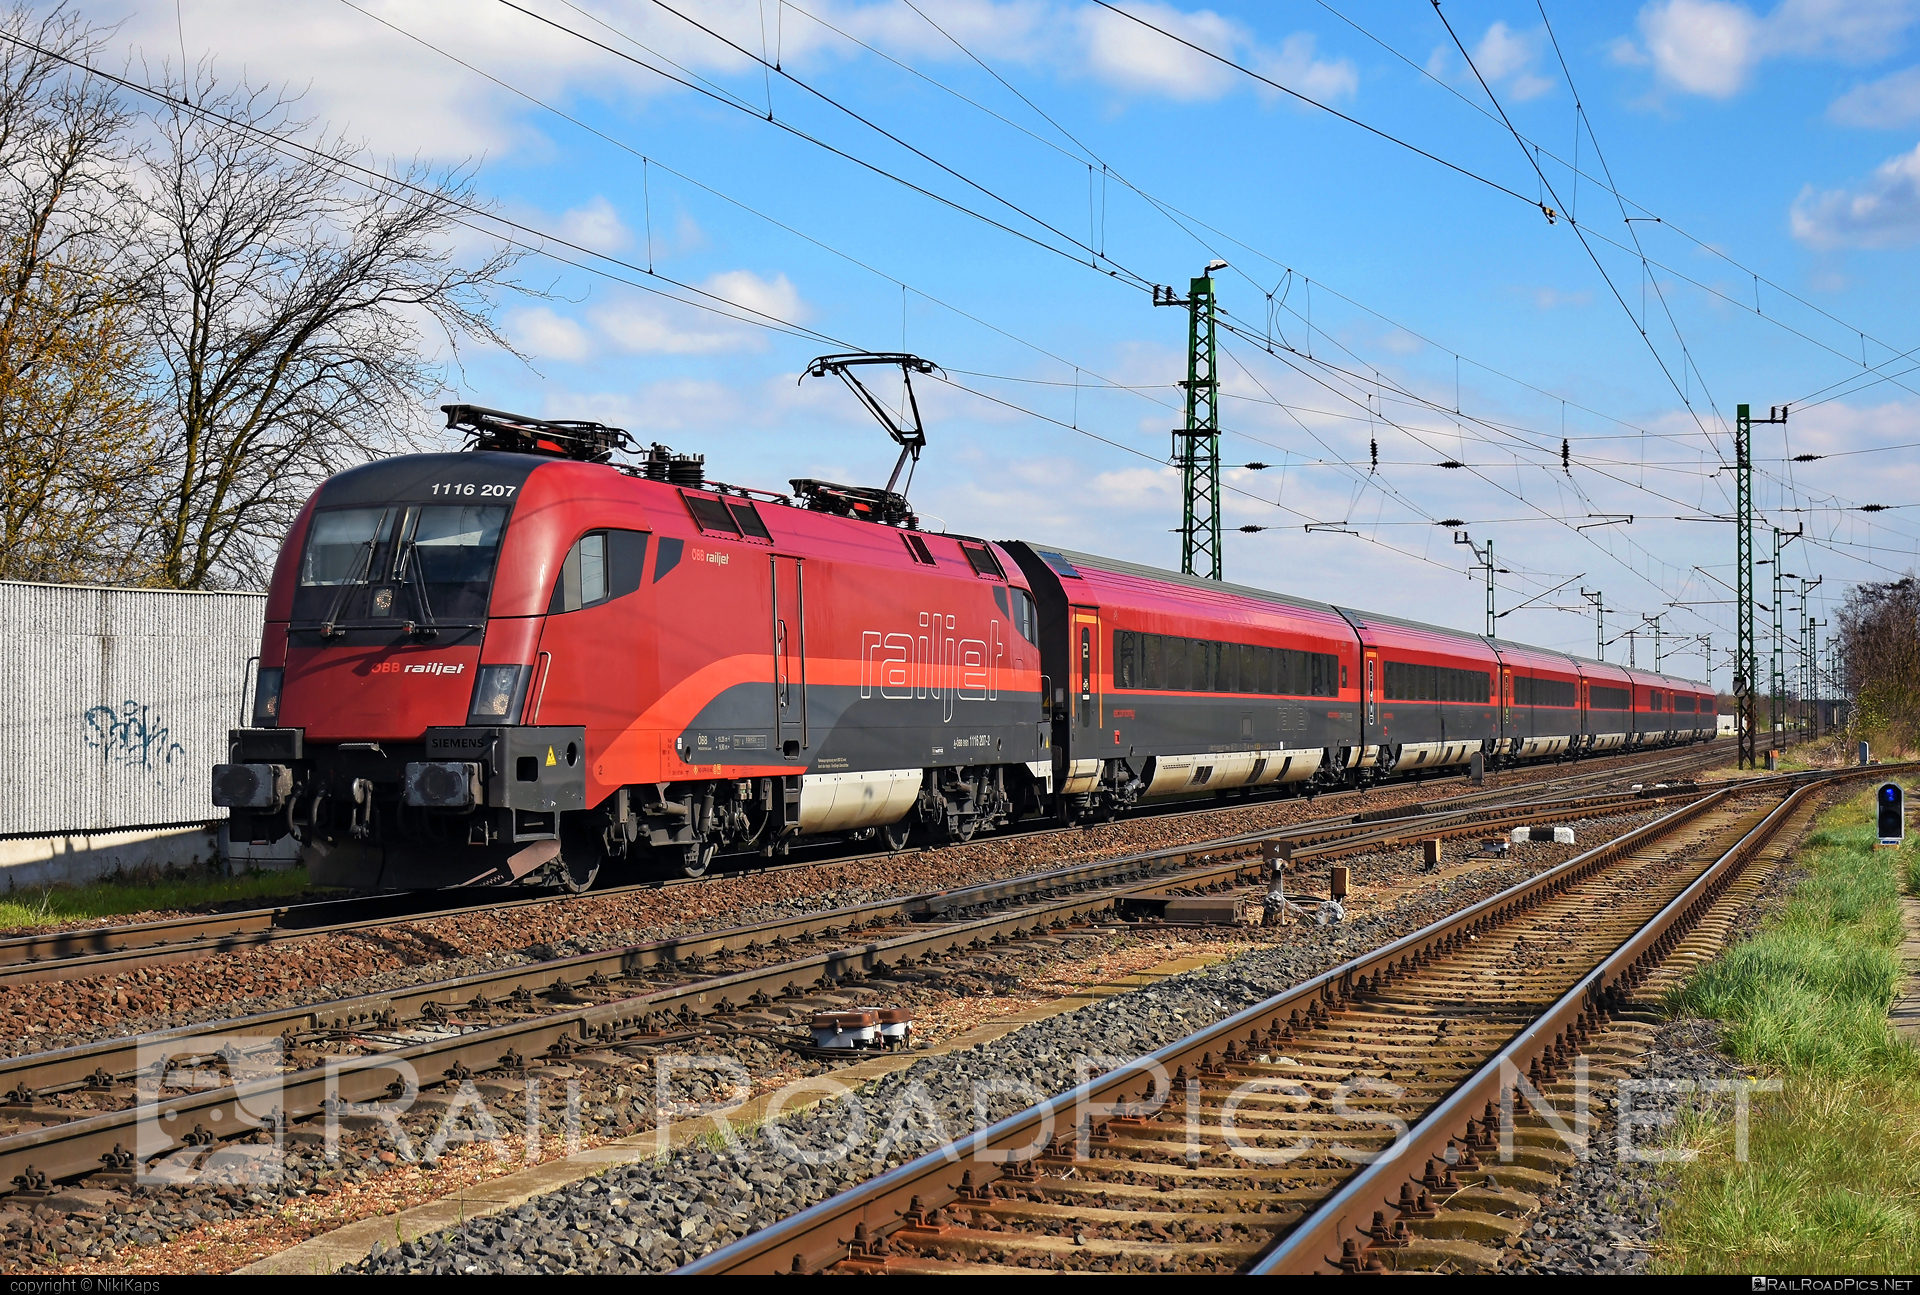 Siemens ES 64 U2 - 1116 207 operated by Österreichische Bundesbahnen #es64 #es64u2 #eurosprinter #obb #obbrailjet #osterreichischebundesbahnen #railjet #siemens #siemensEs64 #siemensEs64u2 #siemenstaurus #taurus #tauruslocomotive